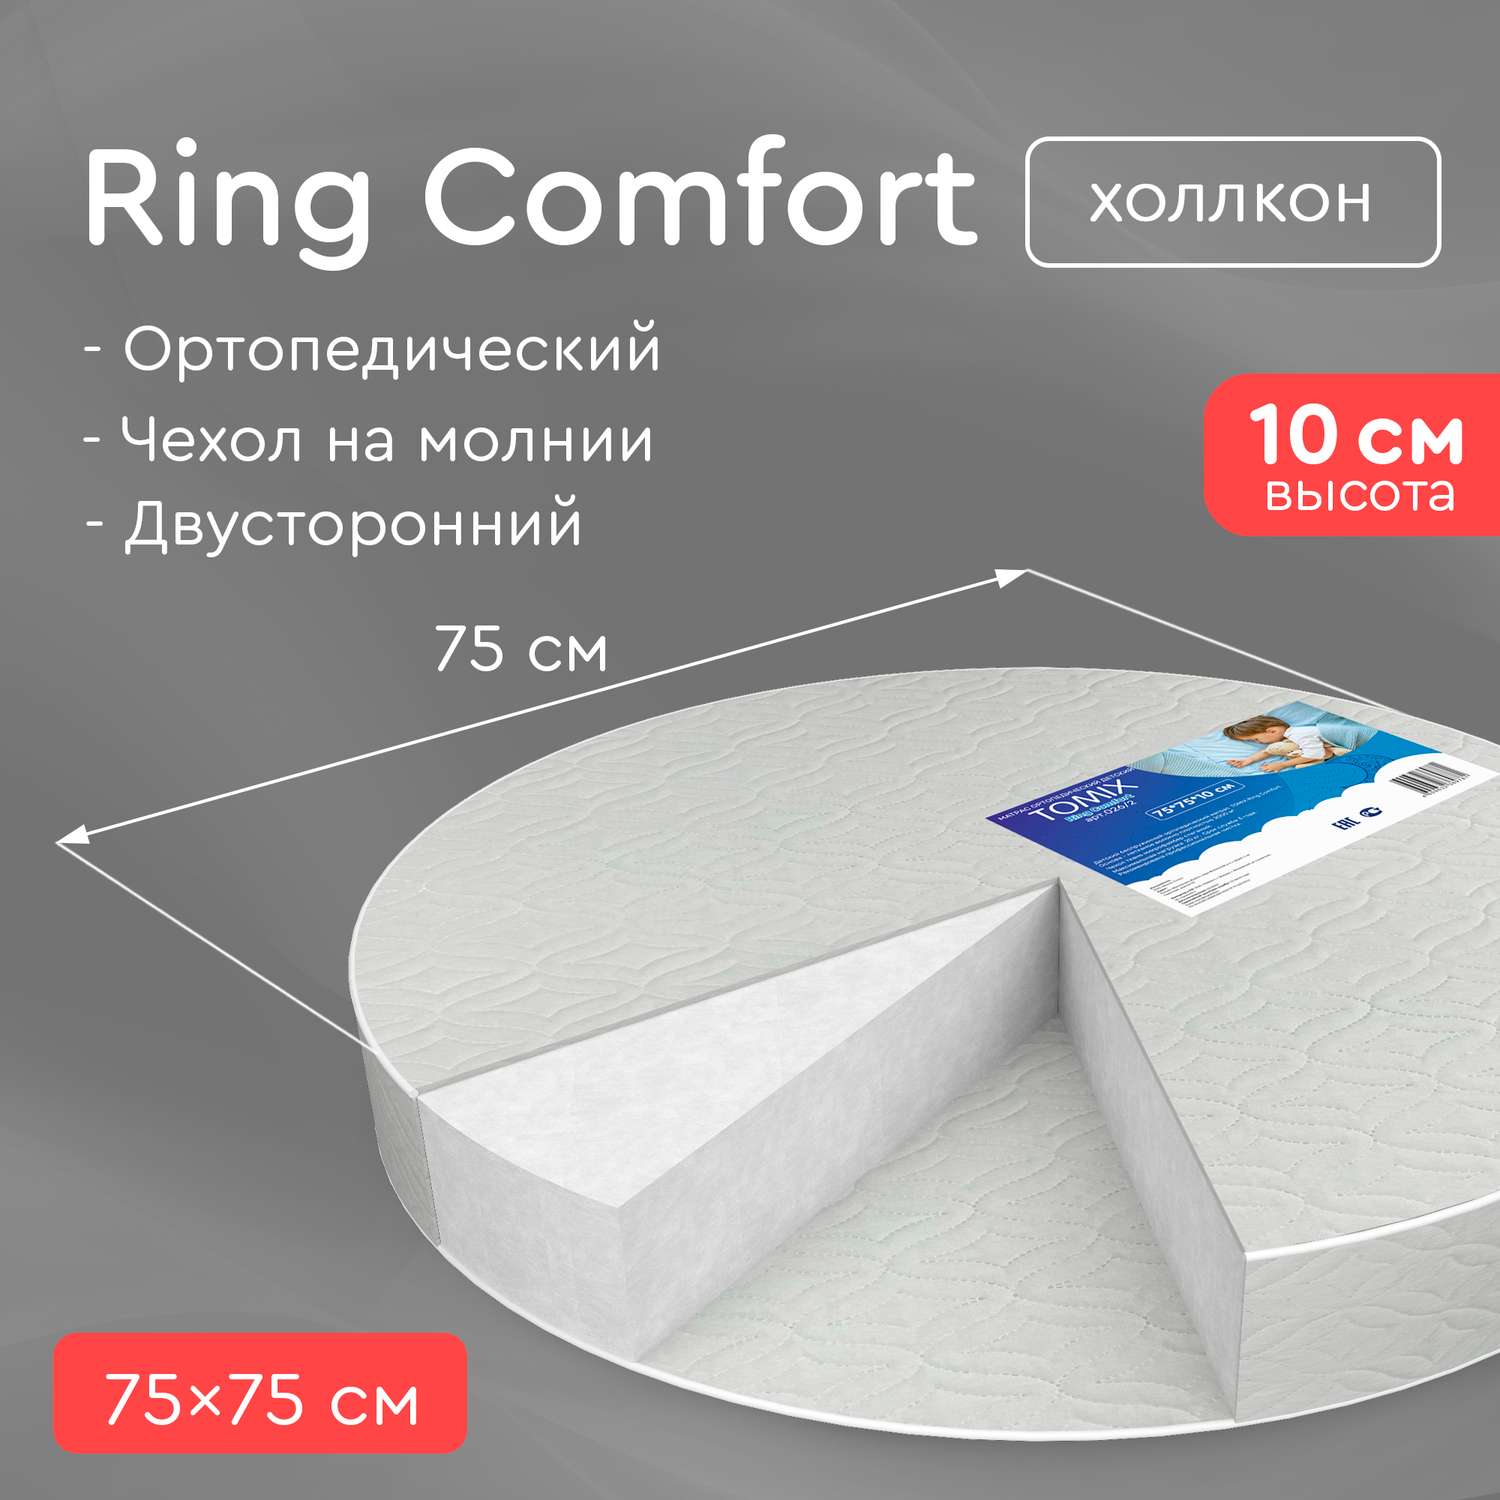 Круглый матрас в кроватку Tomix Ring Comfort 75*75 см - фото 2